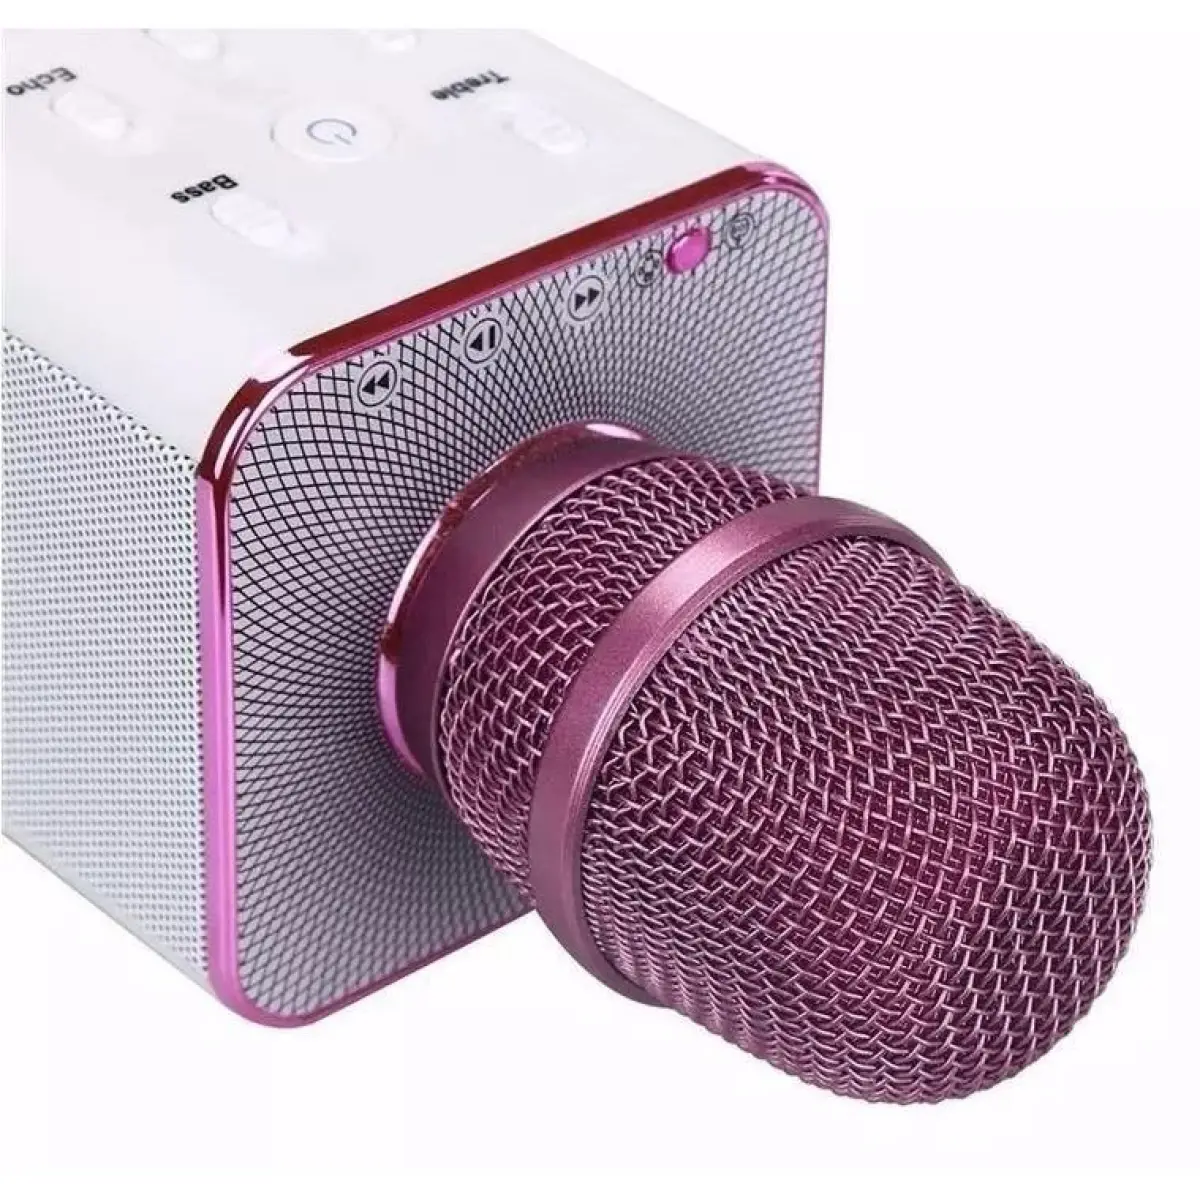 [Bảo Hành 6 Tháng] Mic karaoke Bluetooth có loa Q7 3 trong 1, tích hợp loa với âm thanh tuyệt vời, kết nối với bluetooth 3.0, thiết kế hoàn hảo cho hát karaoke